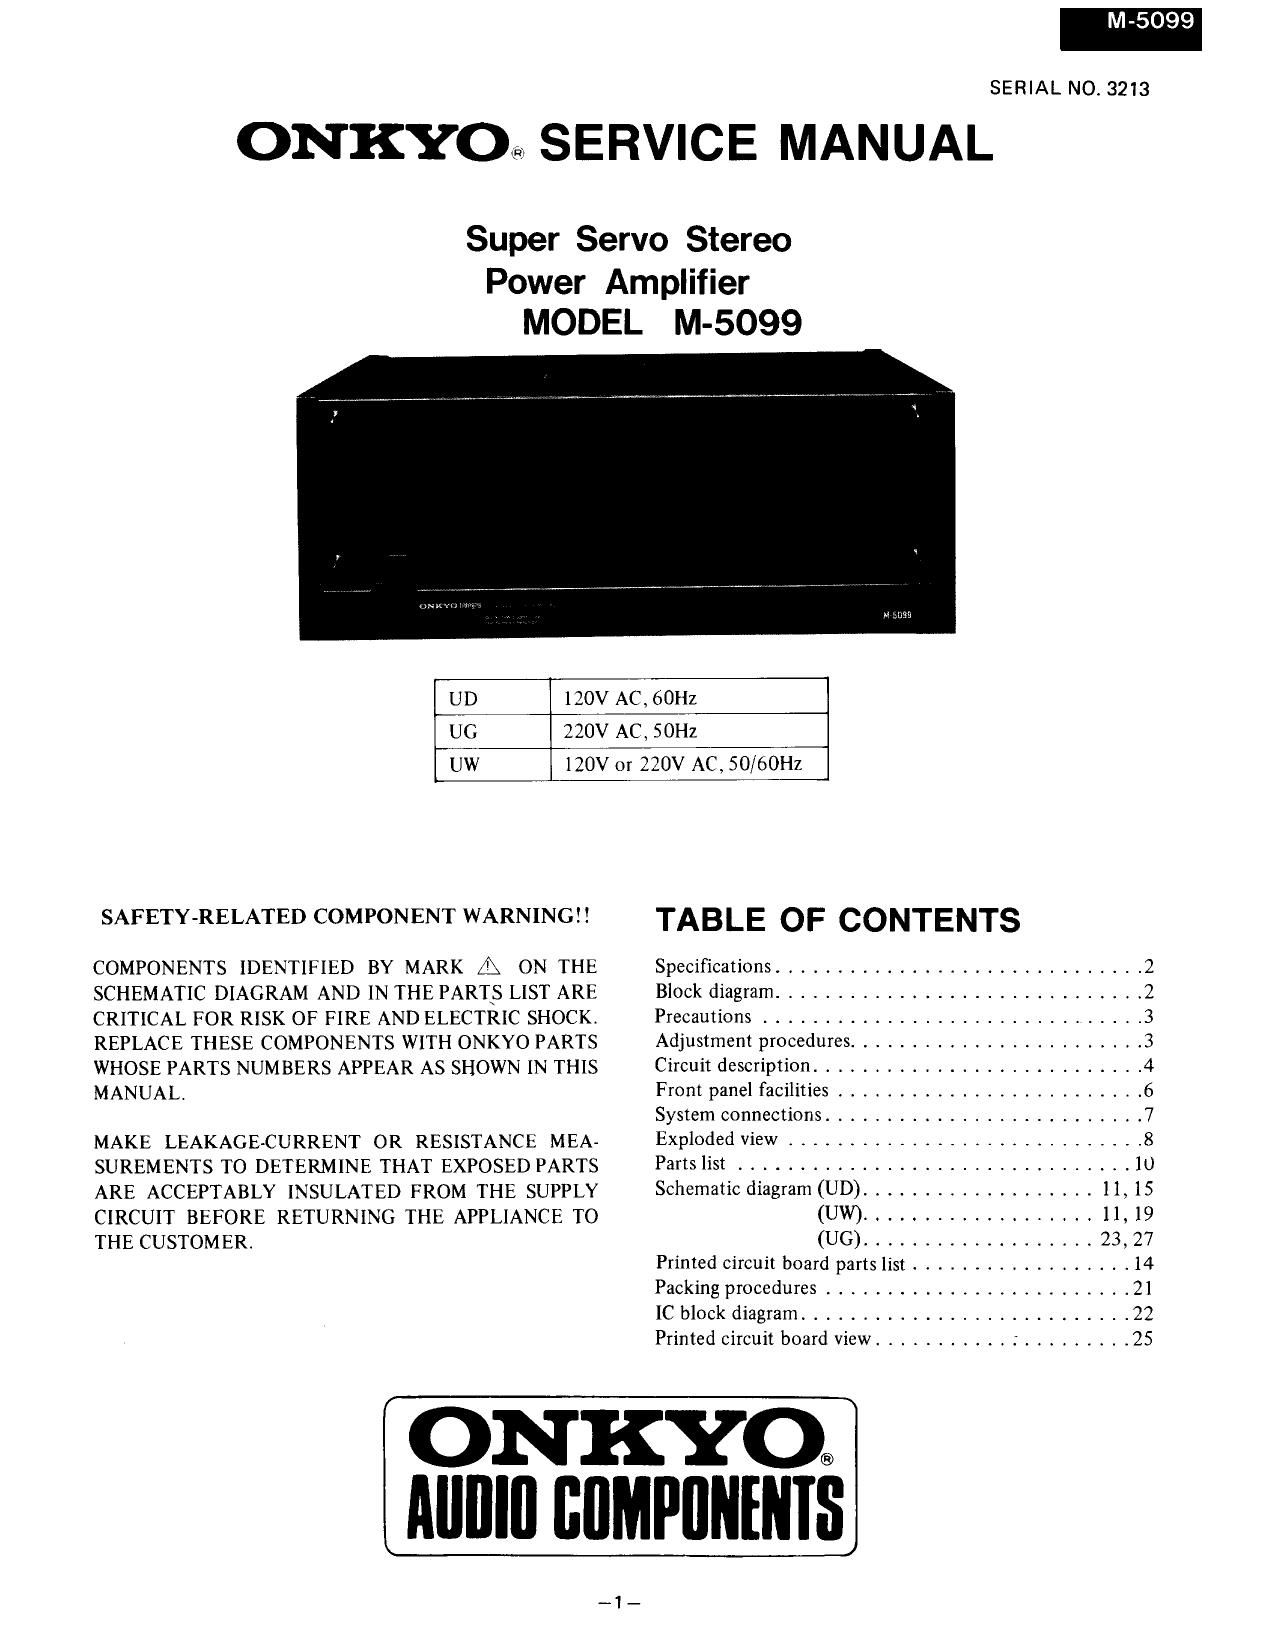 Onkyo M 5090 Service Manual